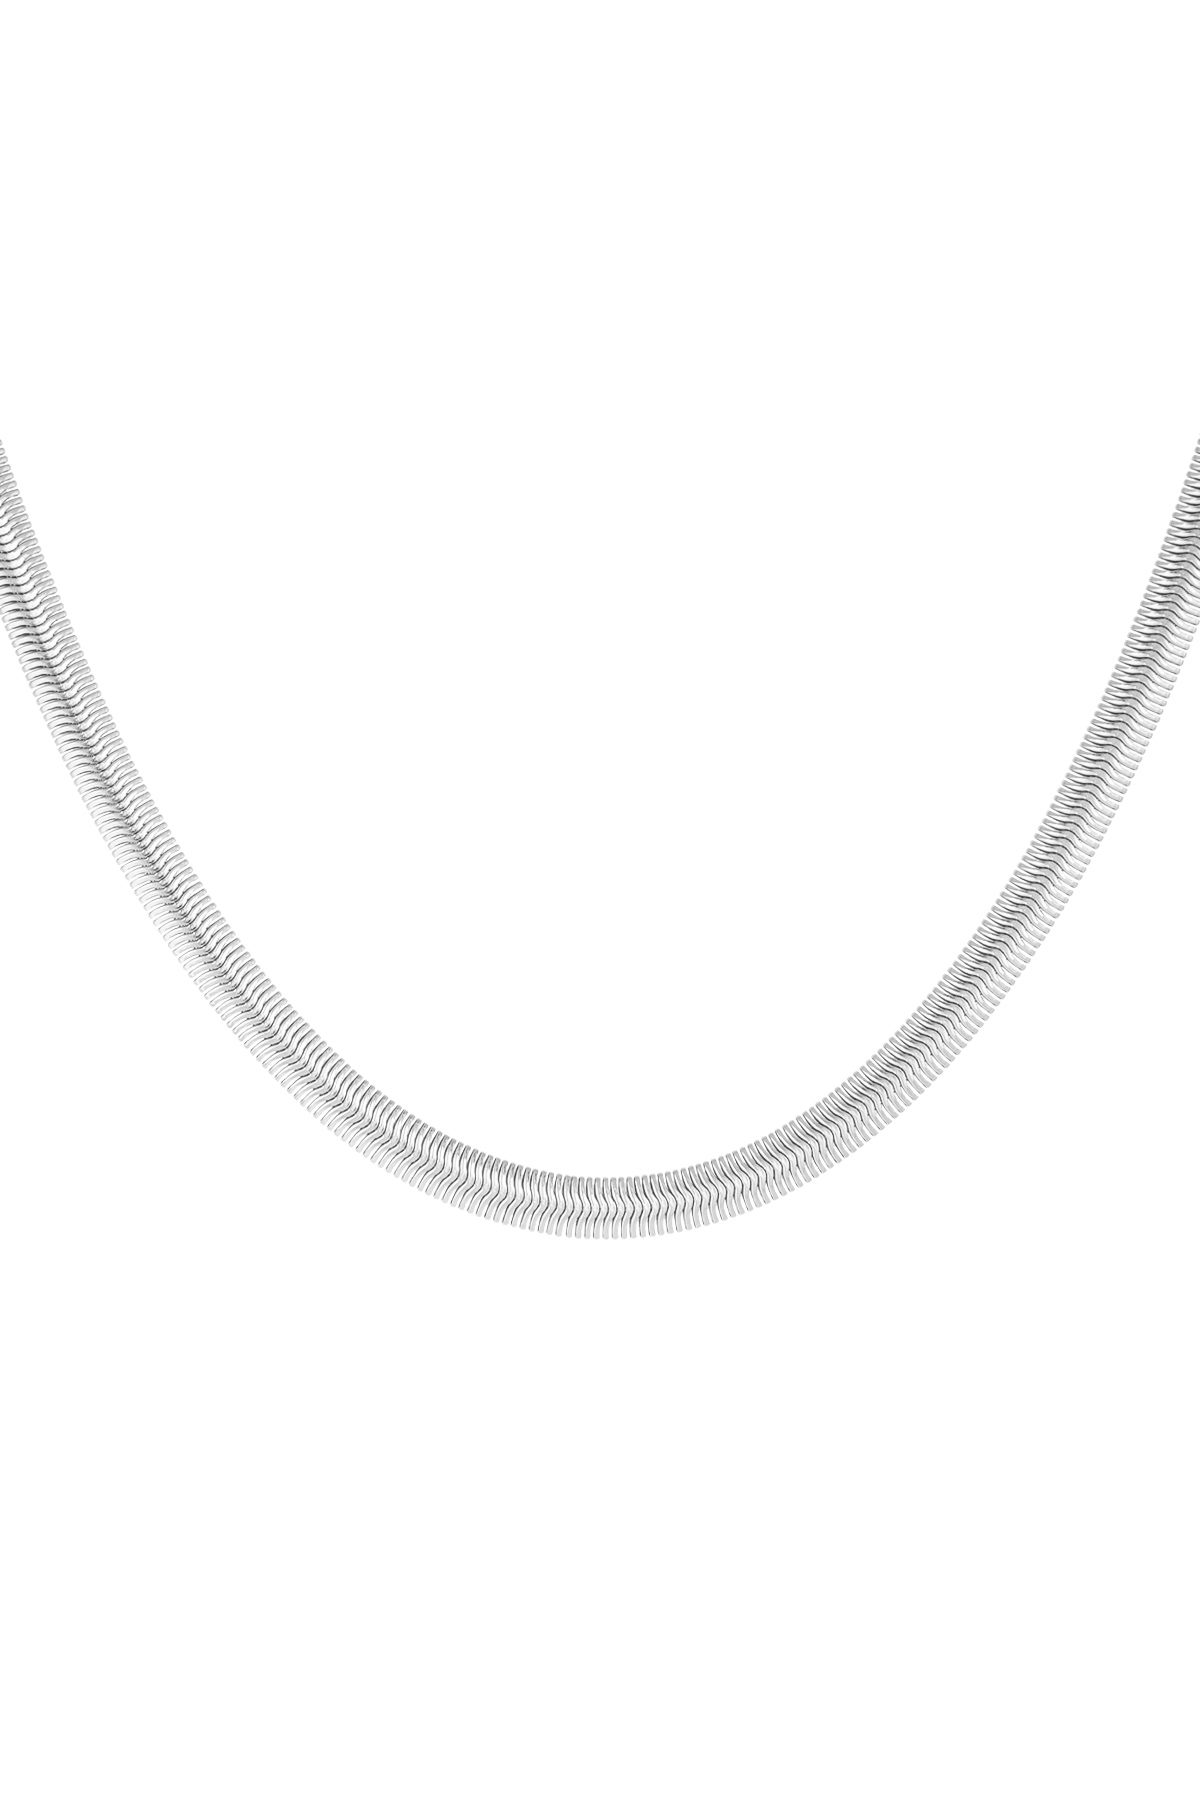 Halskette flach mit Aufdruck - Silber - 6,0MM h5 